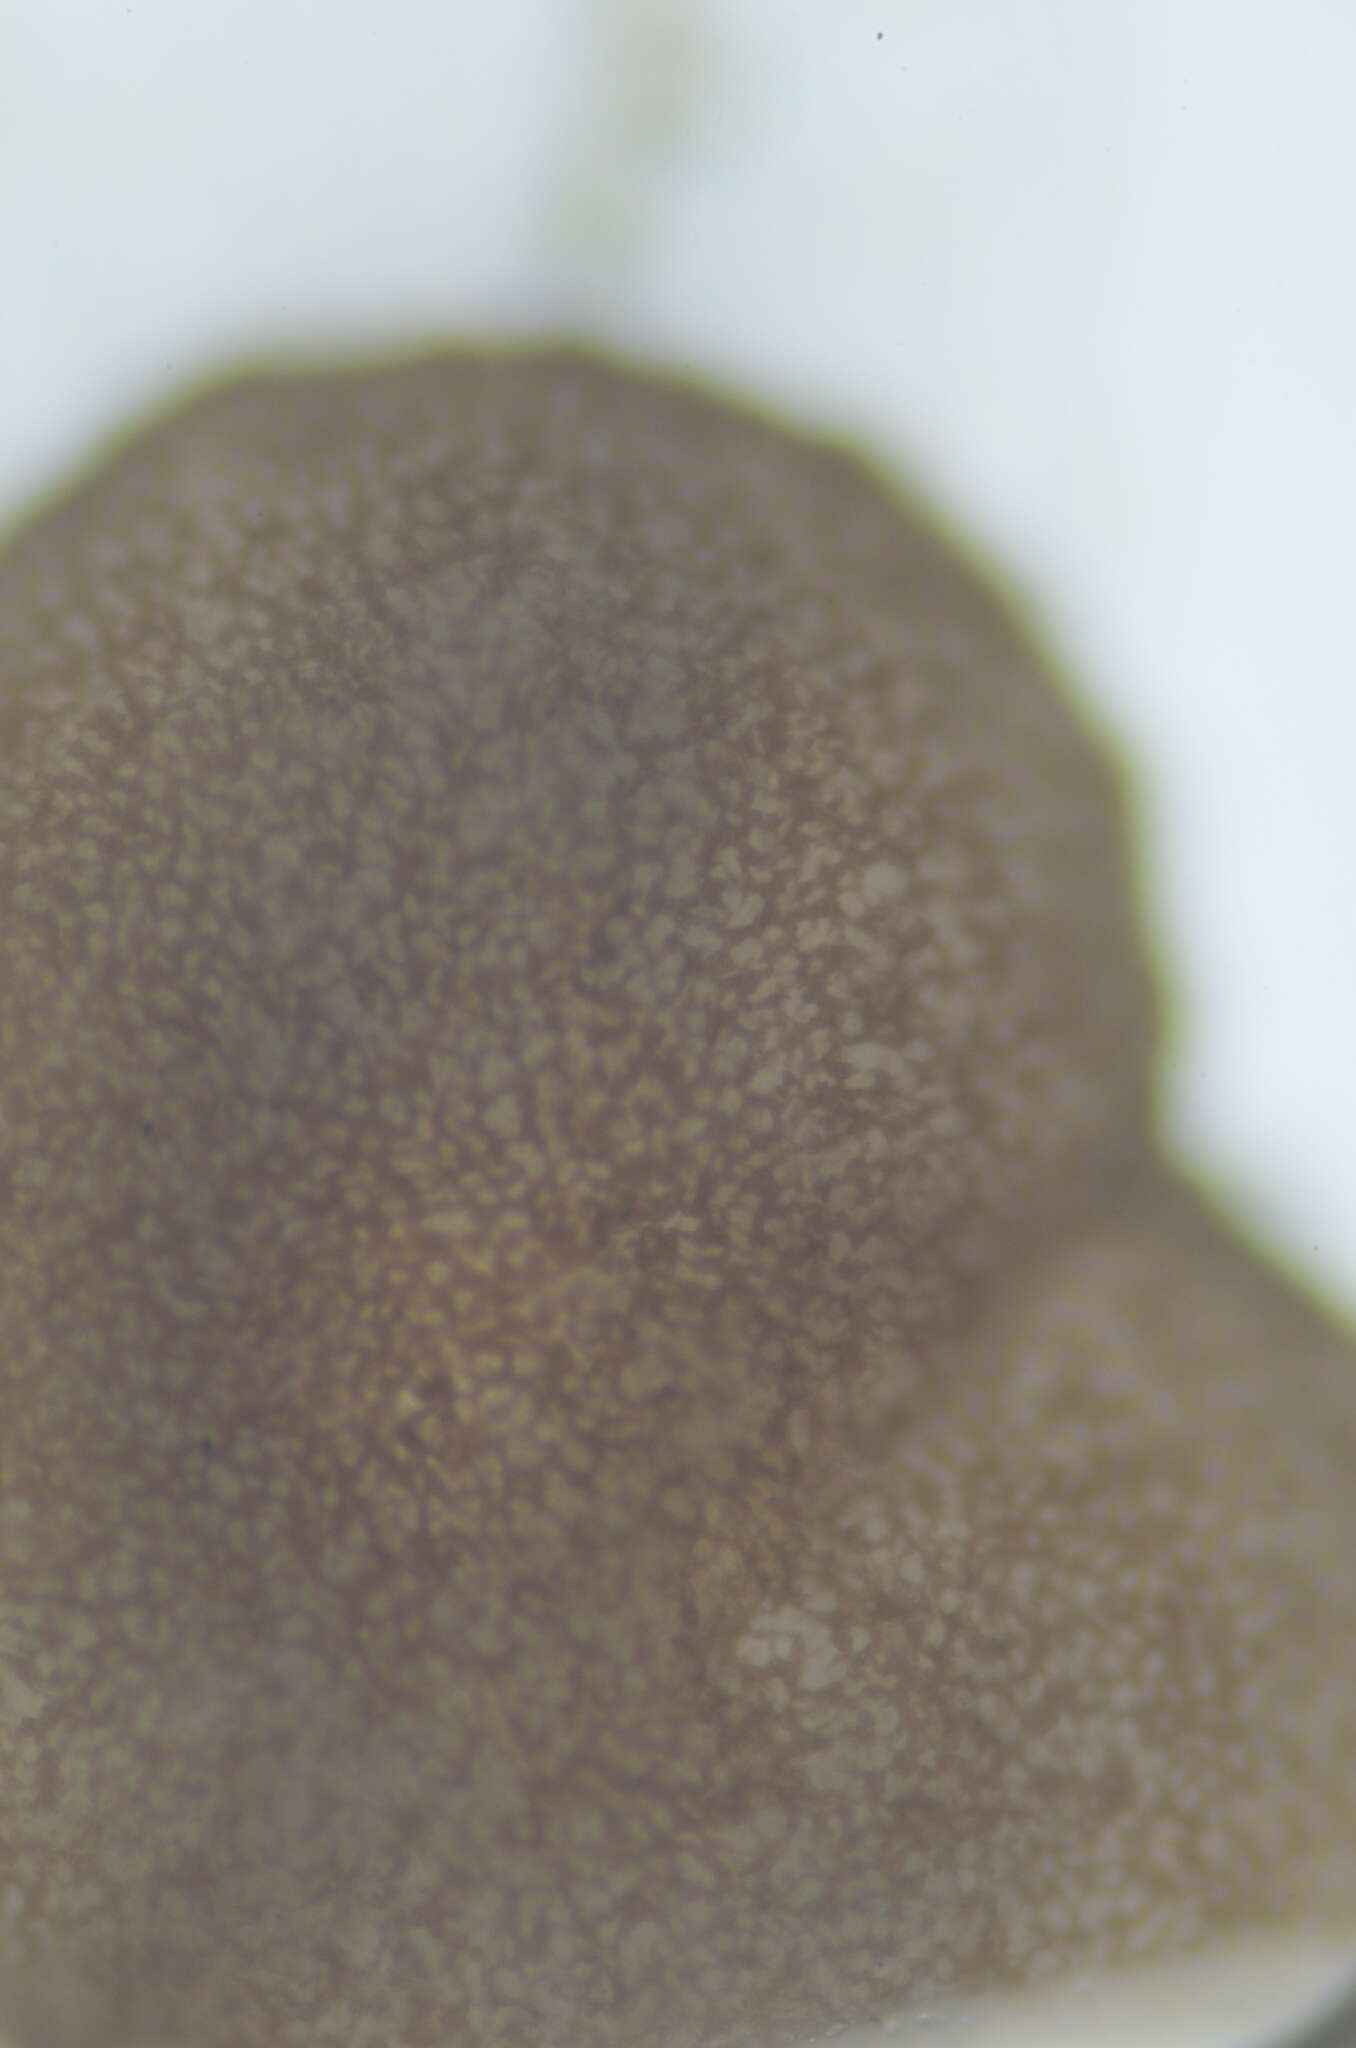 Image of agyrium lichen